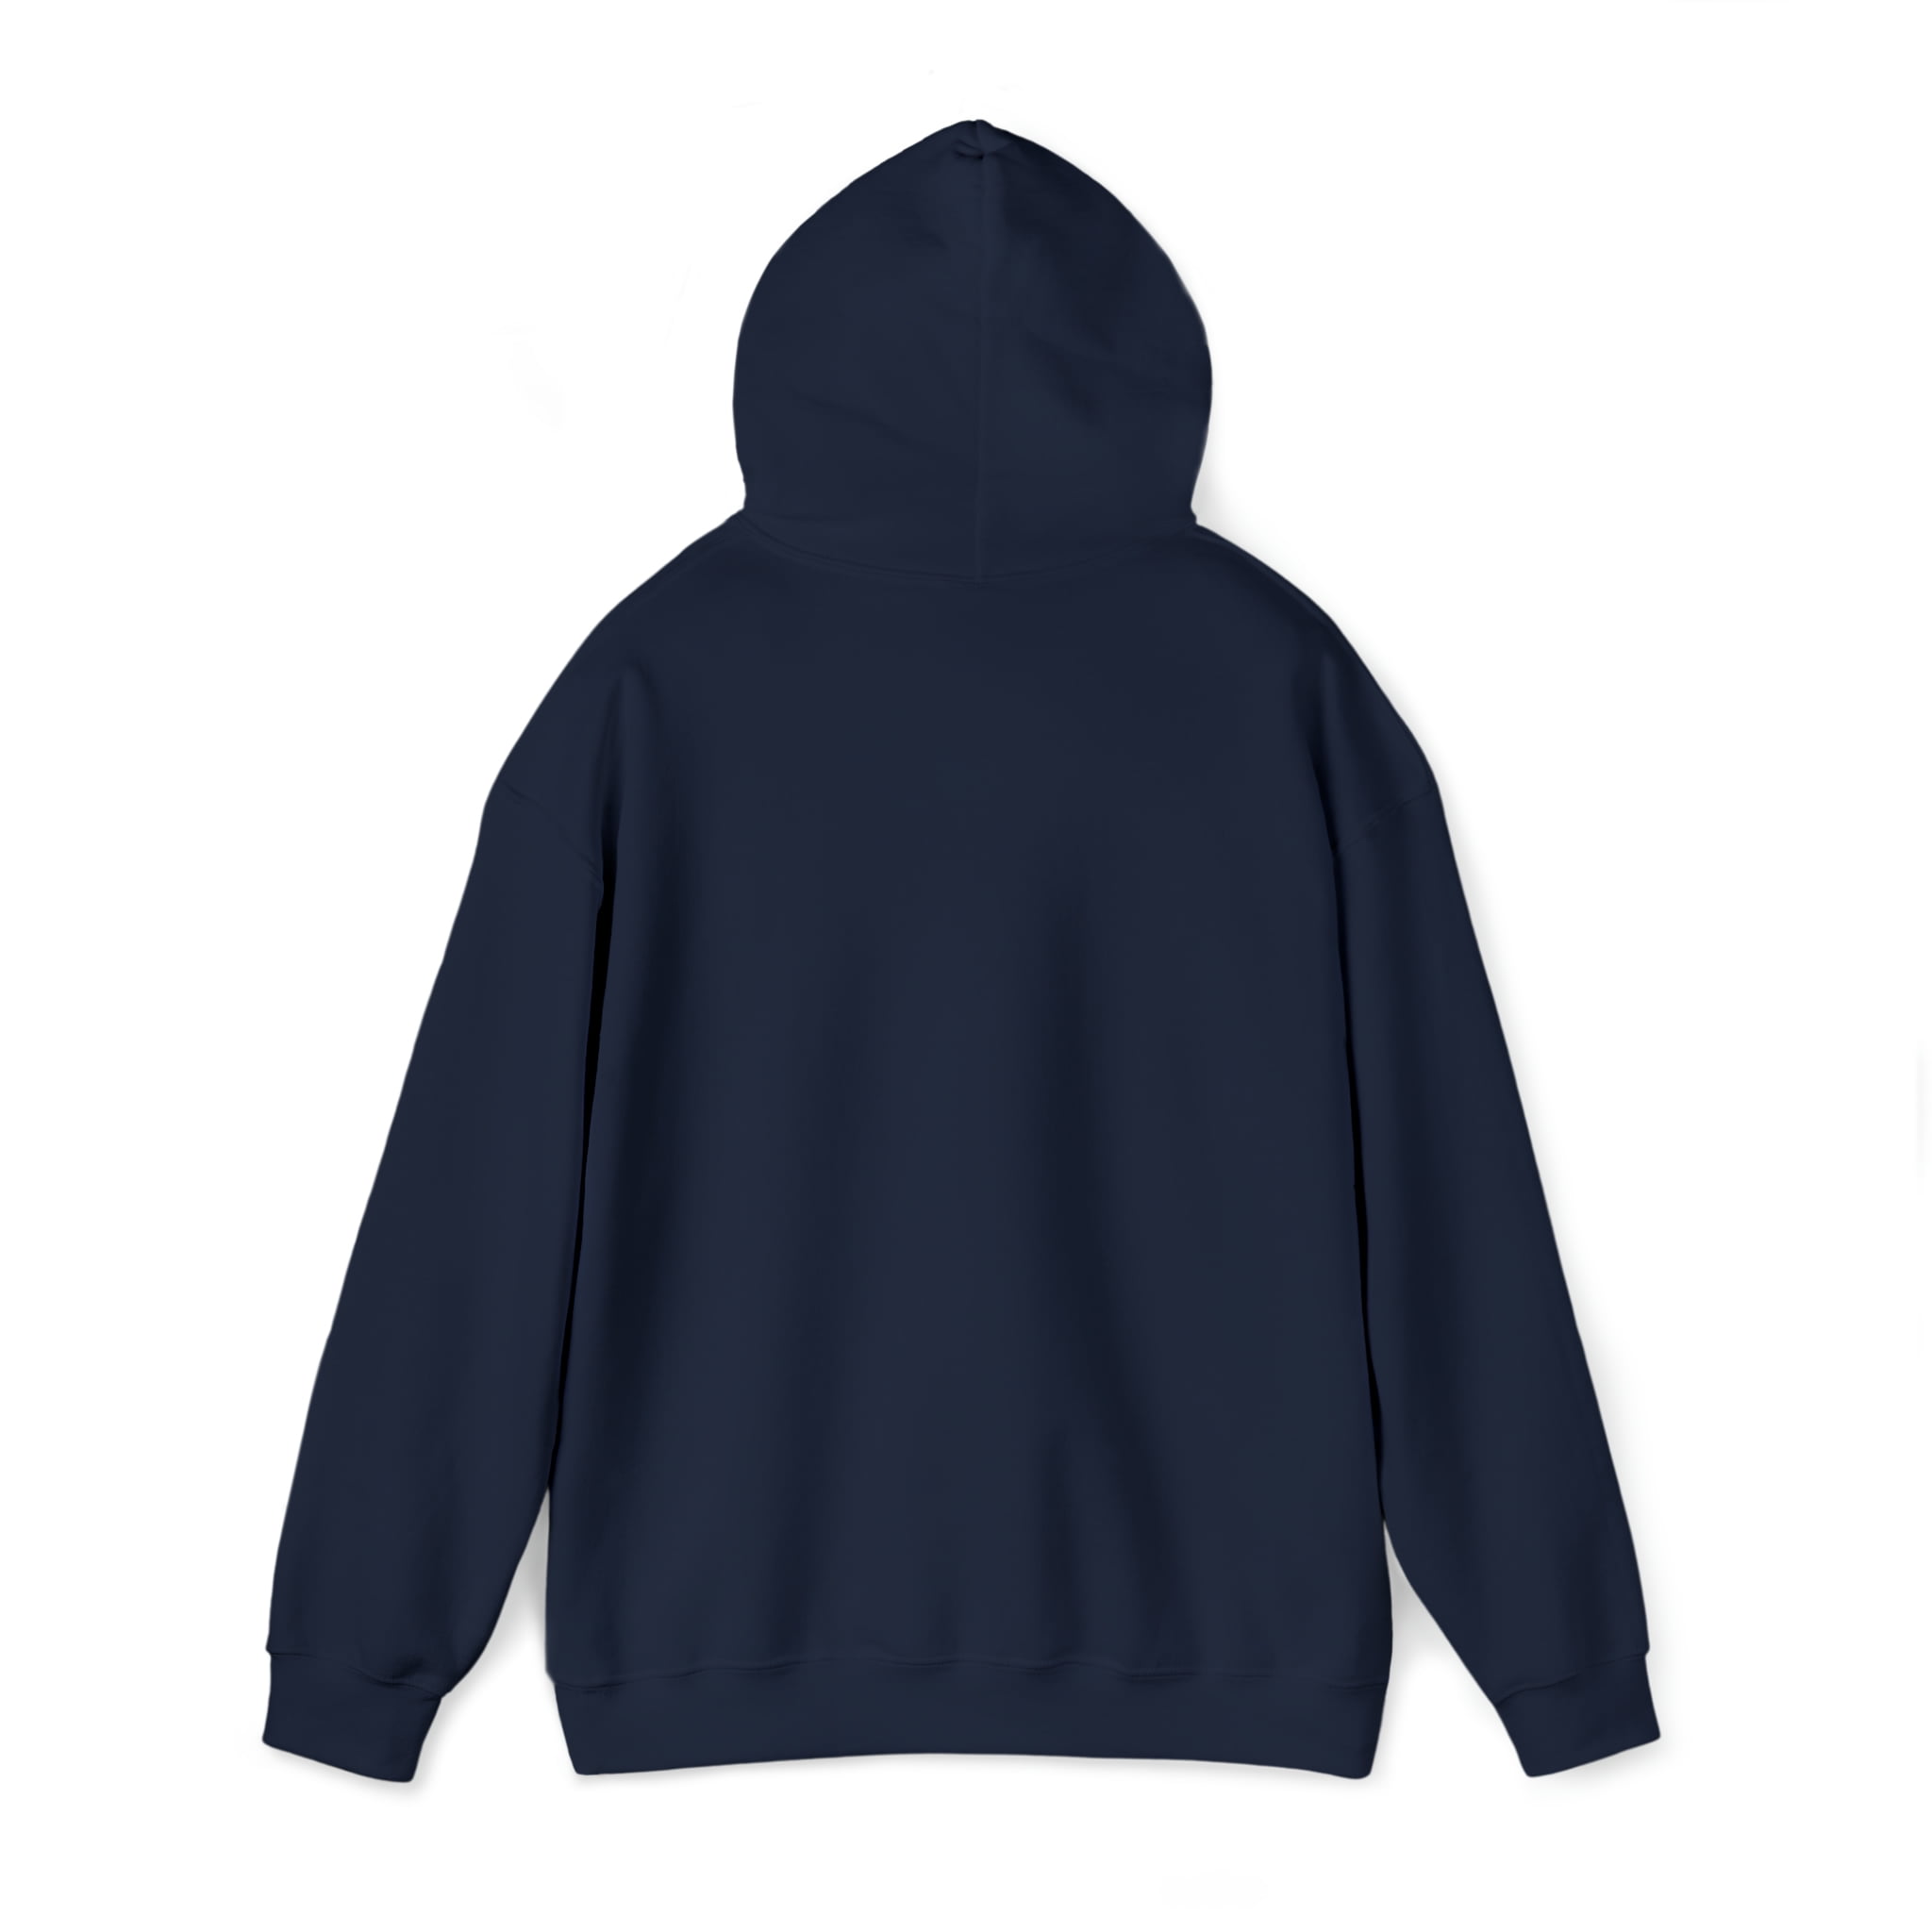 Nebraska Graphic Hoodie Sweatshirt, Sizes S-5XL 